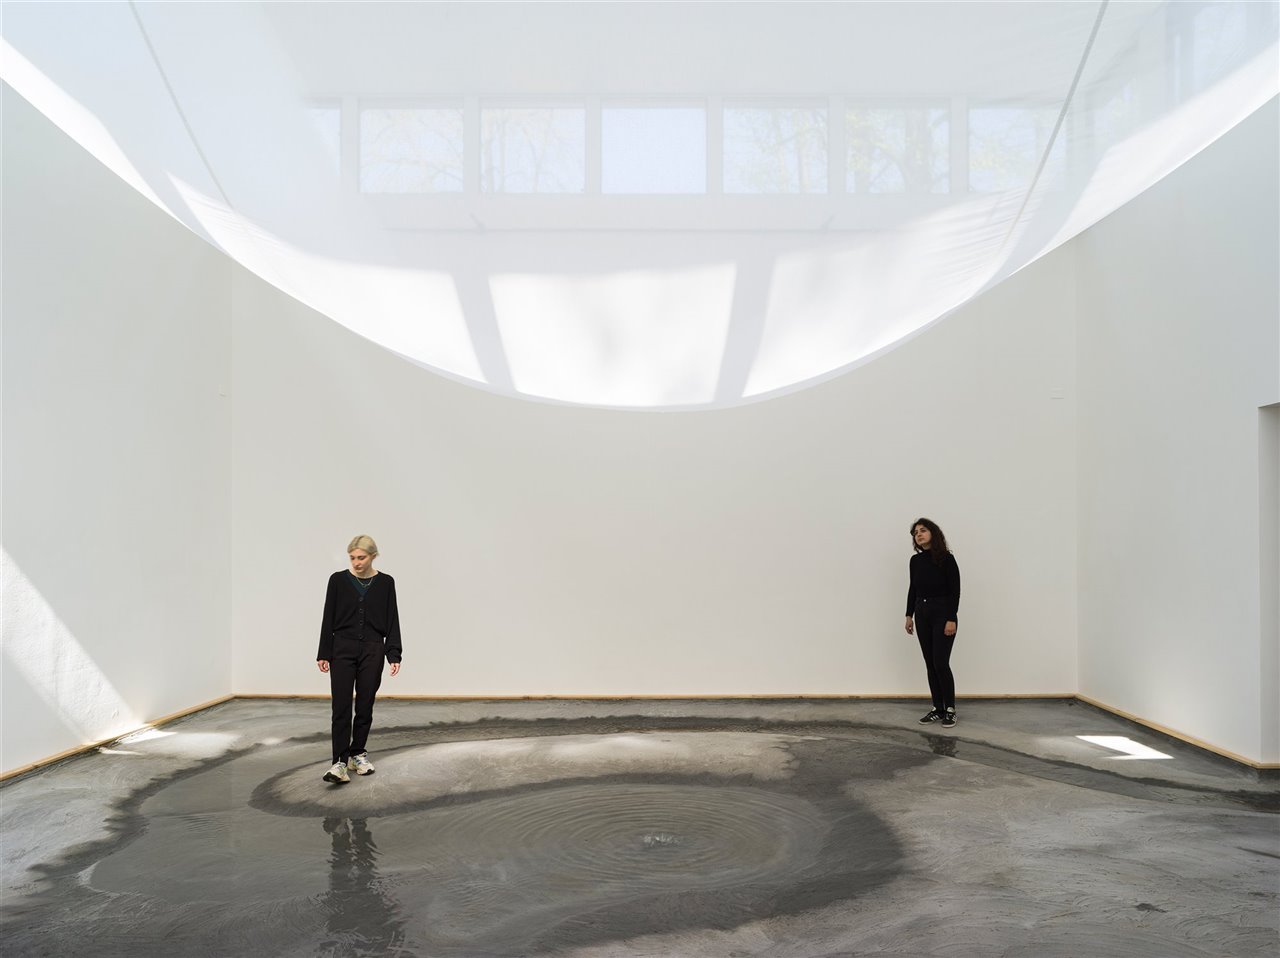 Con-nect-ed-ness. Pabellón danés diseñado por Lundgaard & Tranberg Arkitekter para la Biennale de Venecia 2021